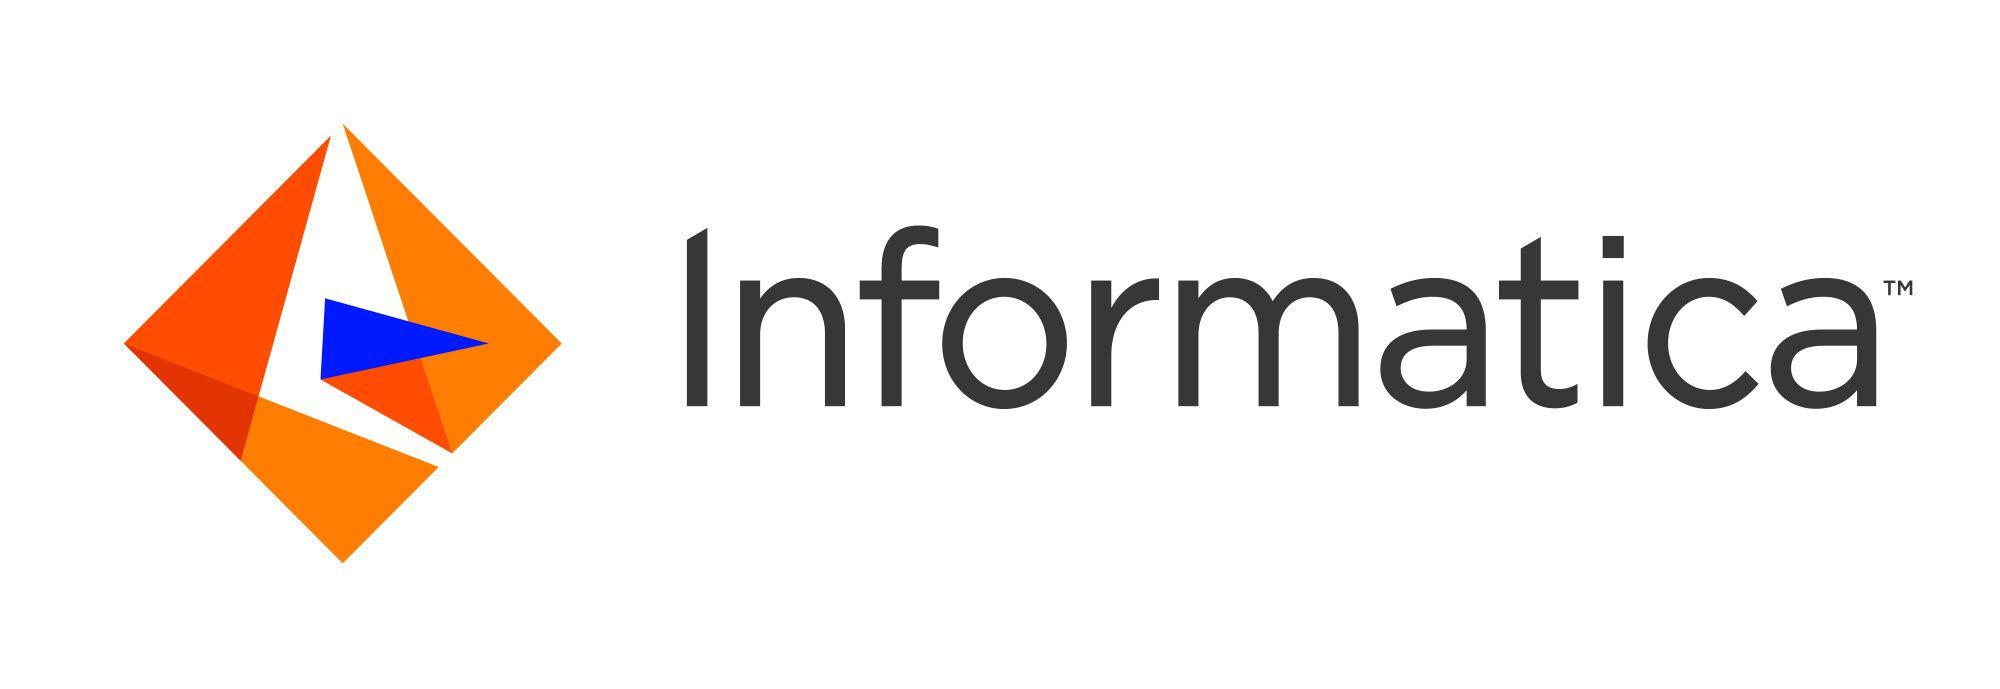 Informatica Logo - informatica logo - Level Blog